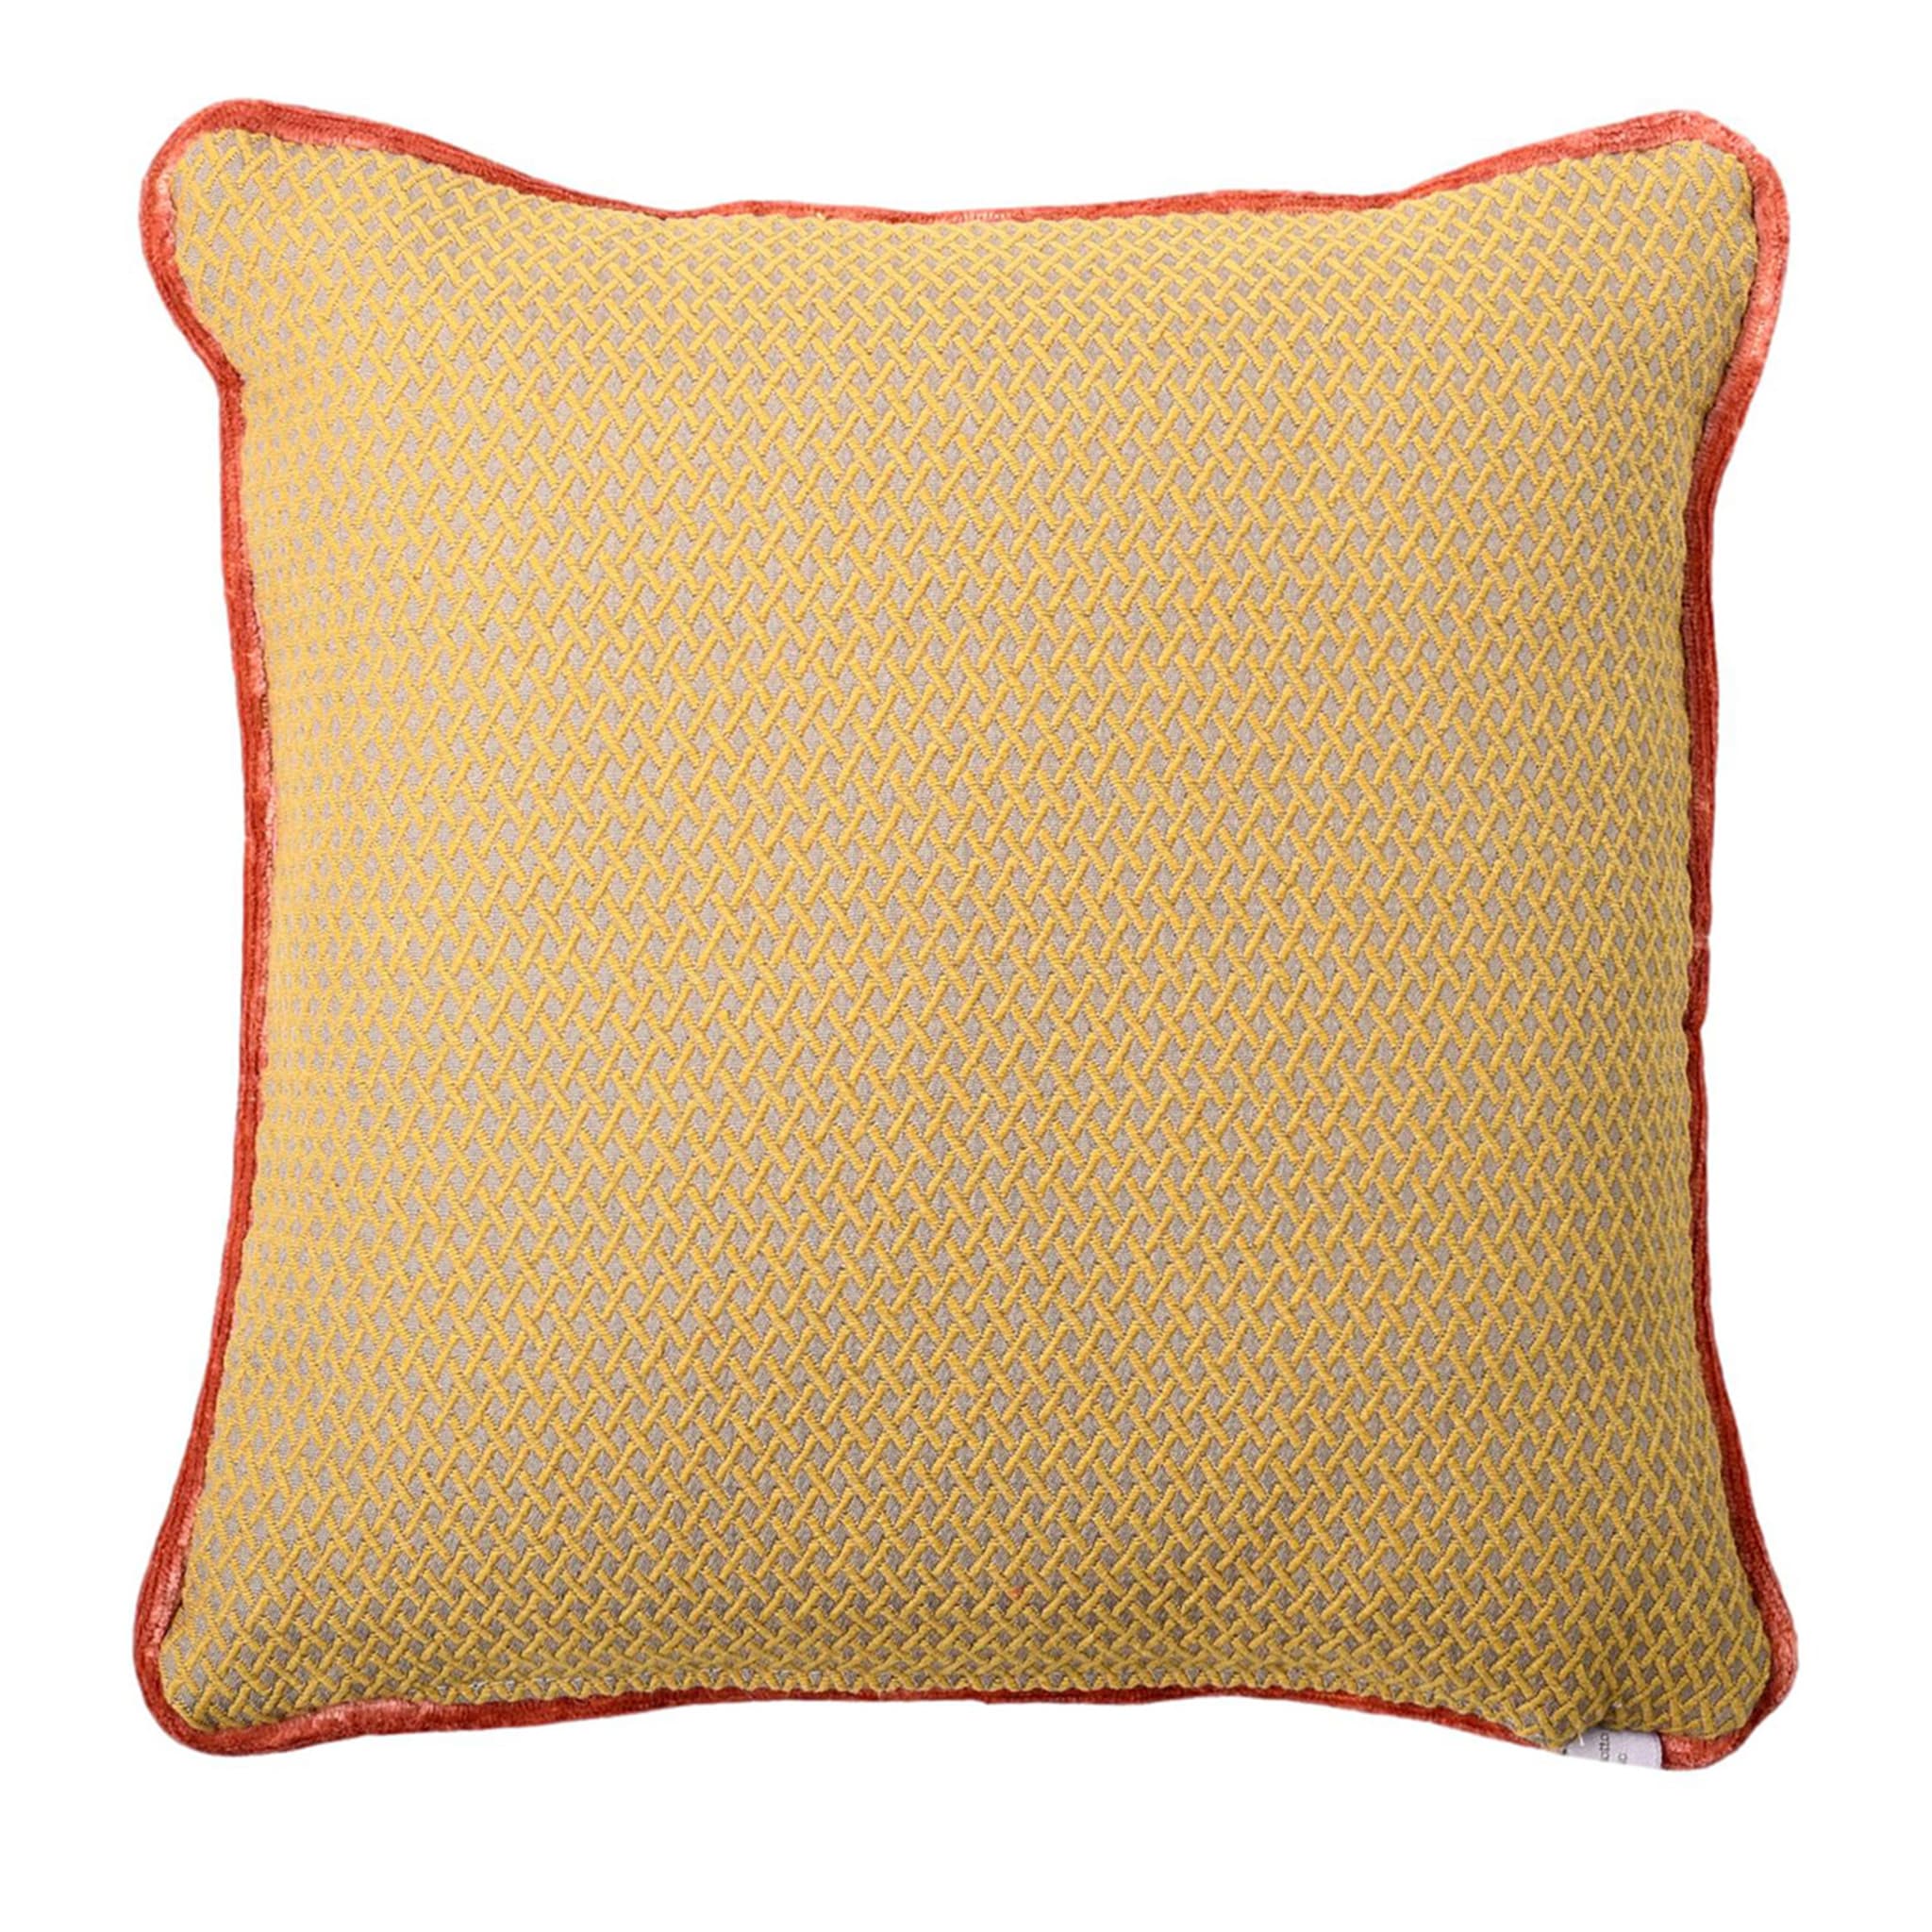 Yellow Carrè Cushion in False Unit Jacquard Fabric - Main view